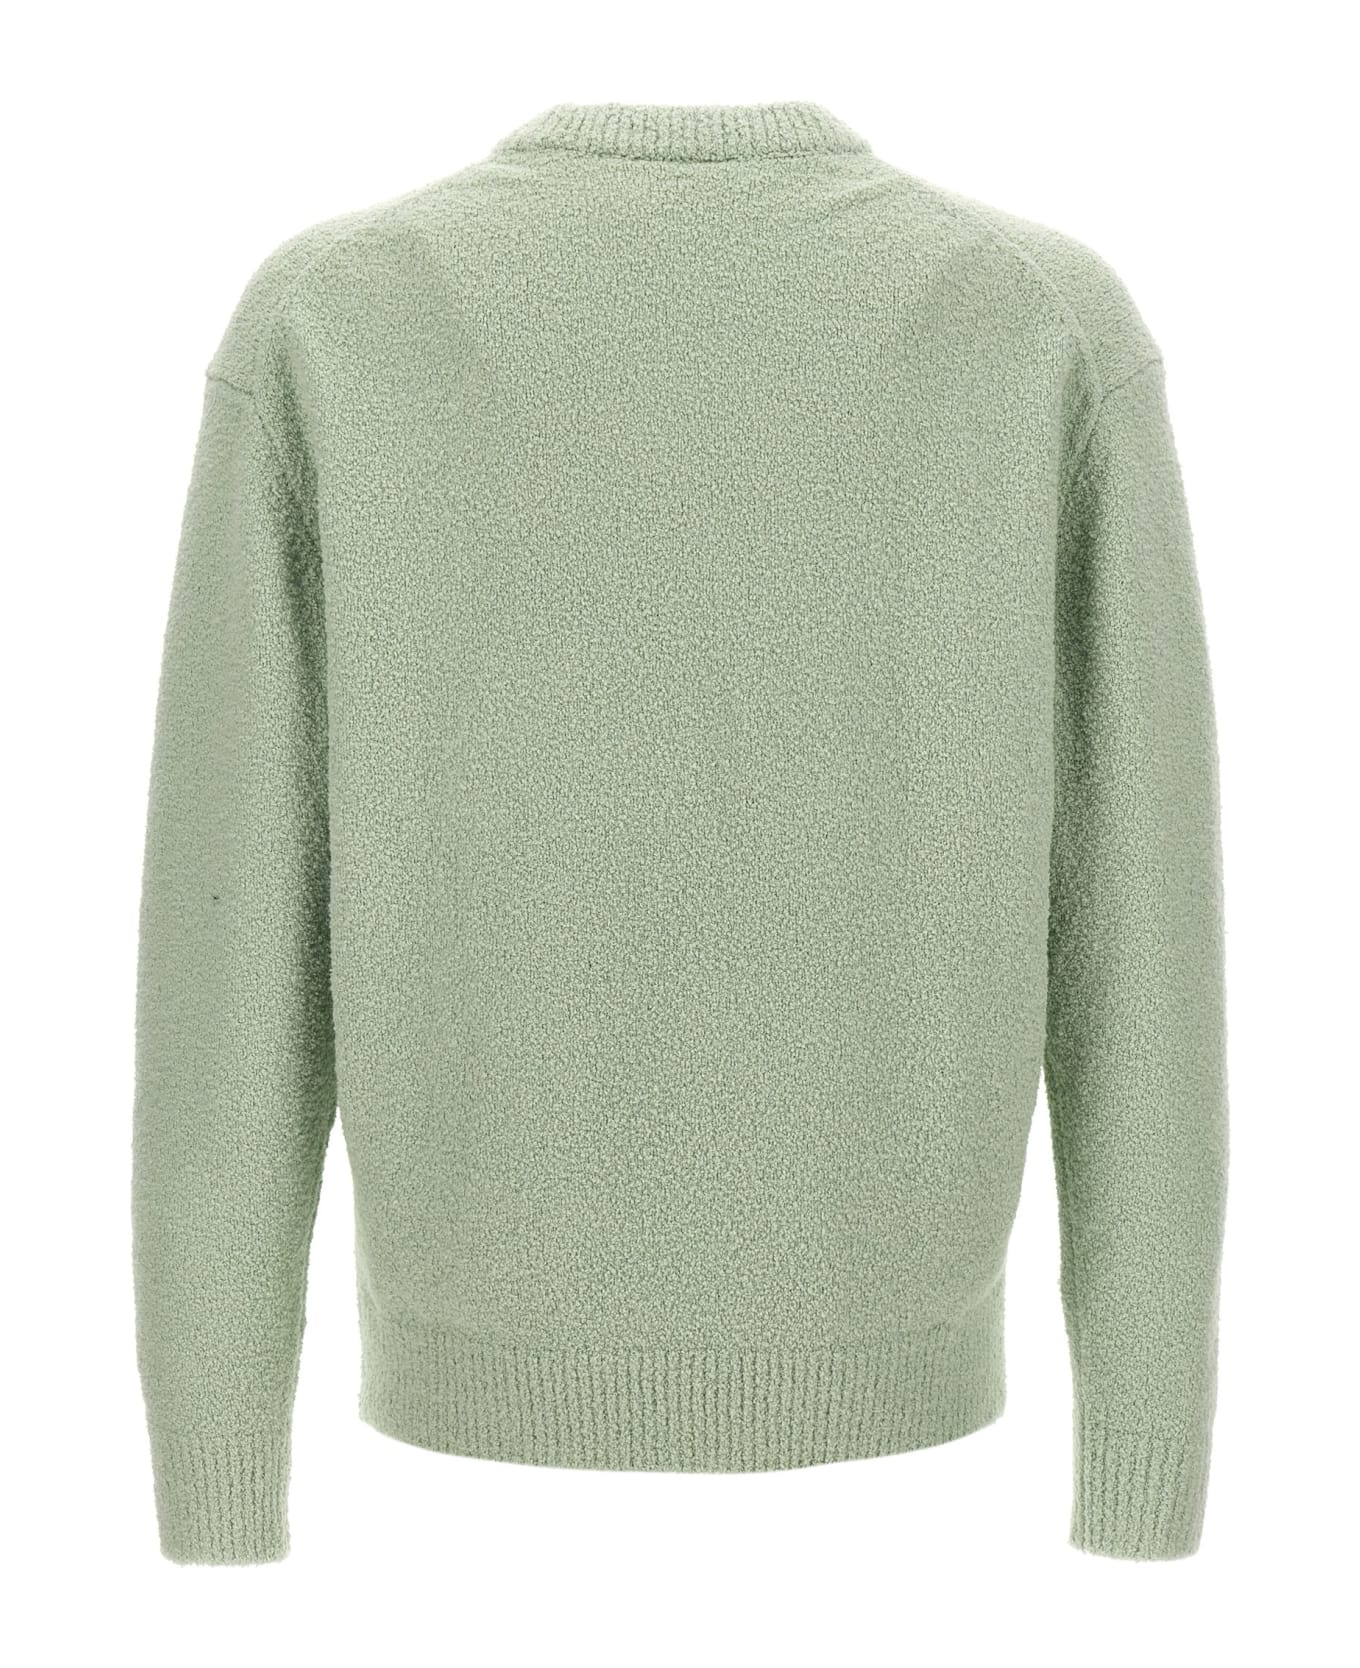 Axel Arigato 'radar' Sweater - Green ニットウェア